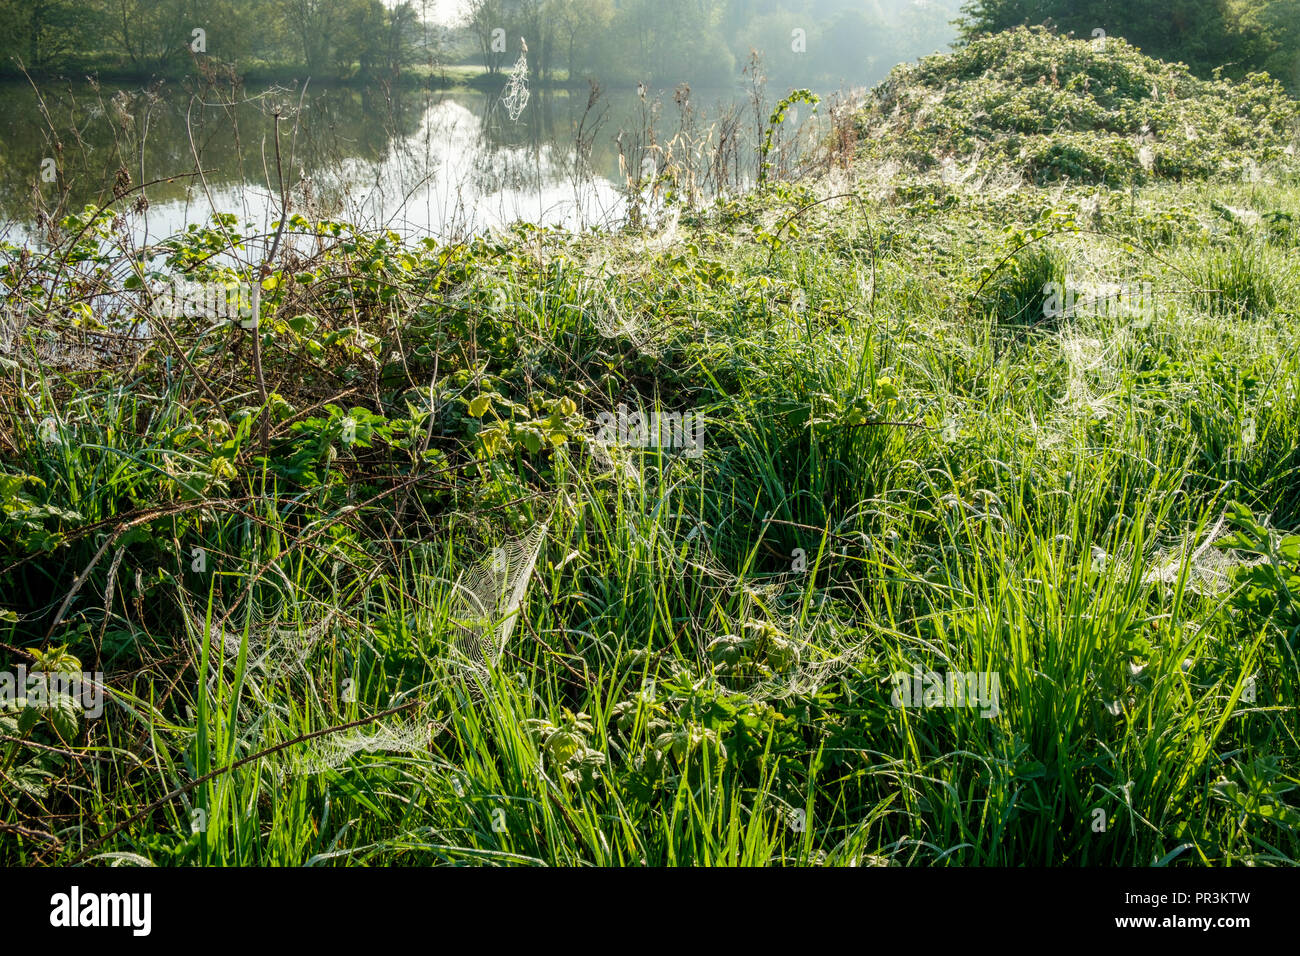 Inizio Rugiada di mattina su Spider's veli (ragnatele) ed erba lunga dal fiume Trent, Nottinghamshire, England, Regno Unito Foto Stock